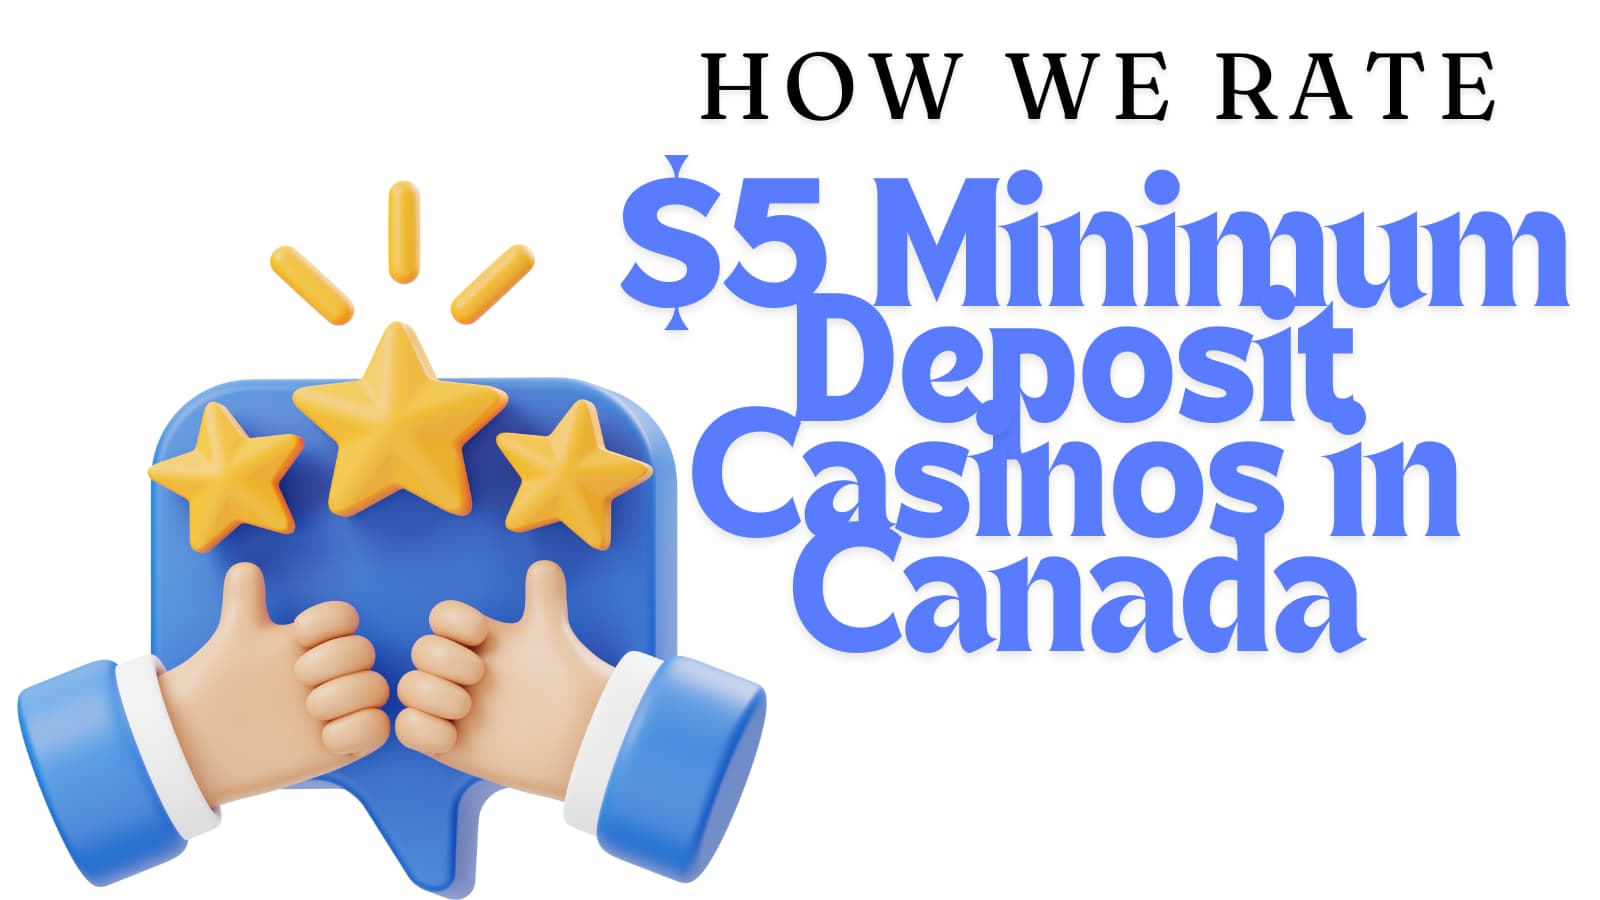 how we rate $5 minimum deposit casinos in canada